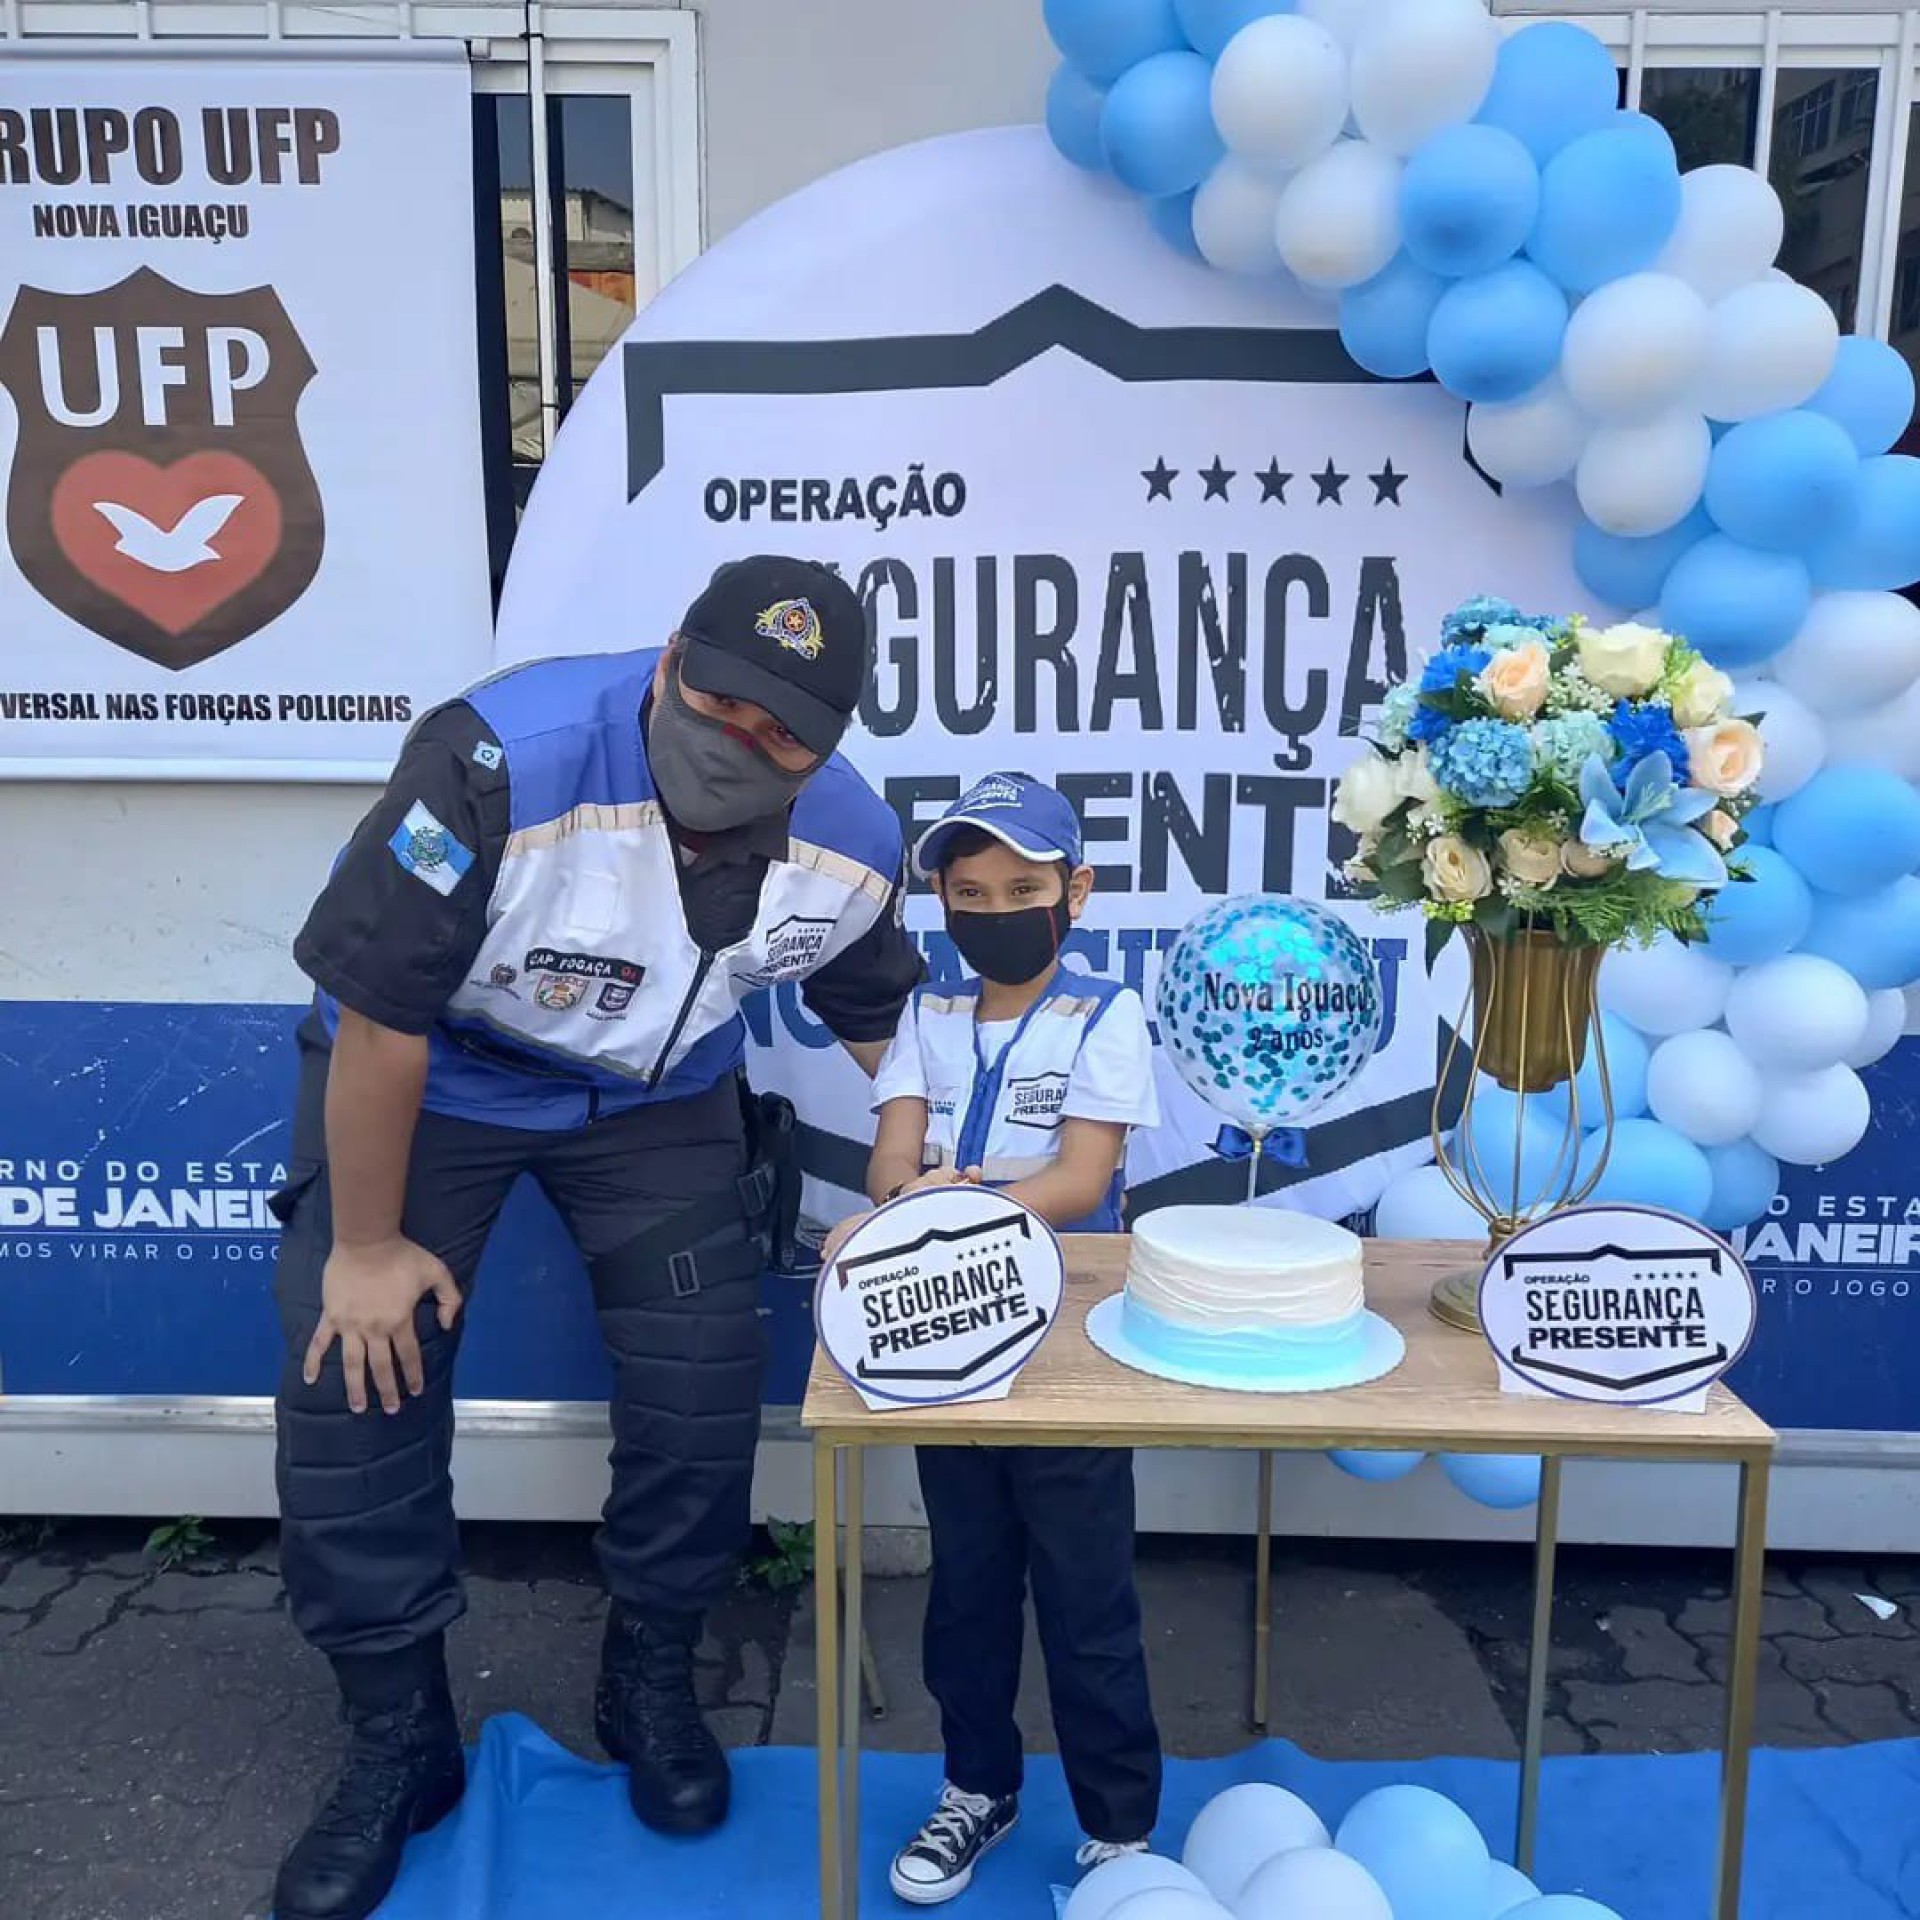 Segurança de Nova Iguaçu ganha reforço com policiais motorizados